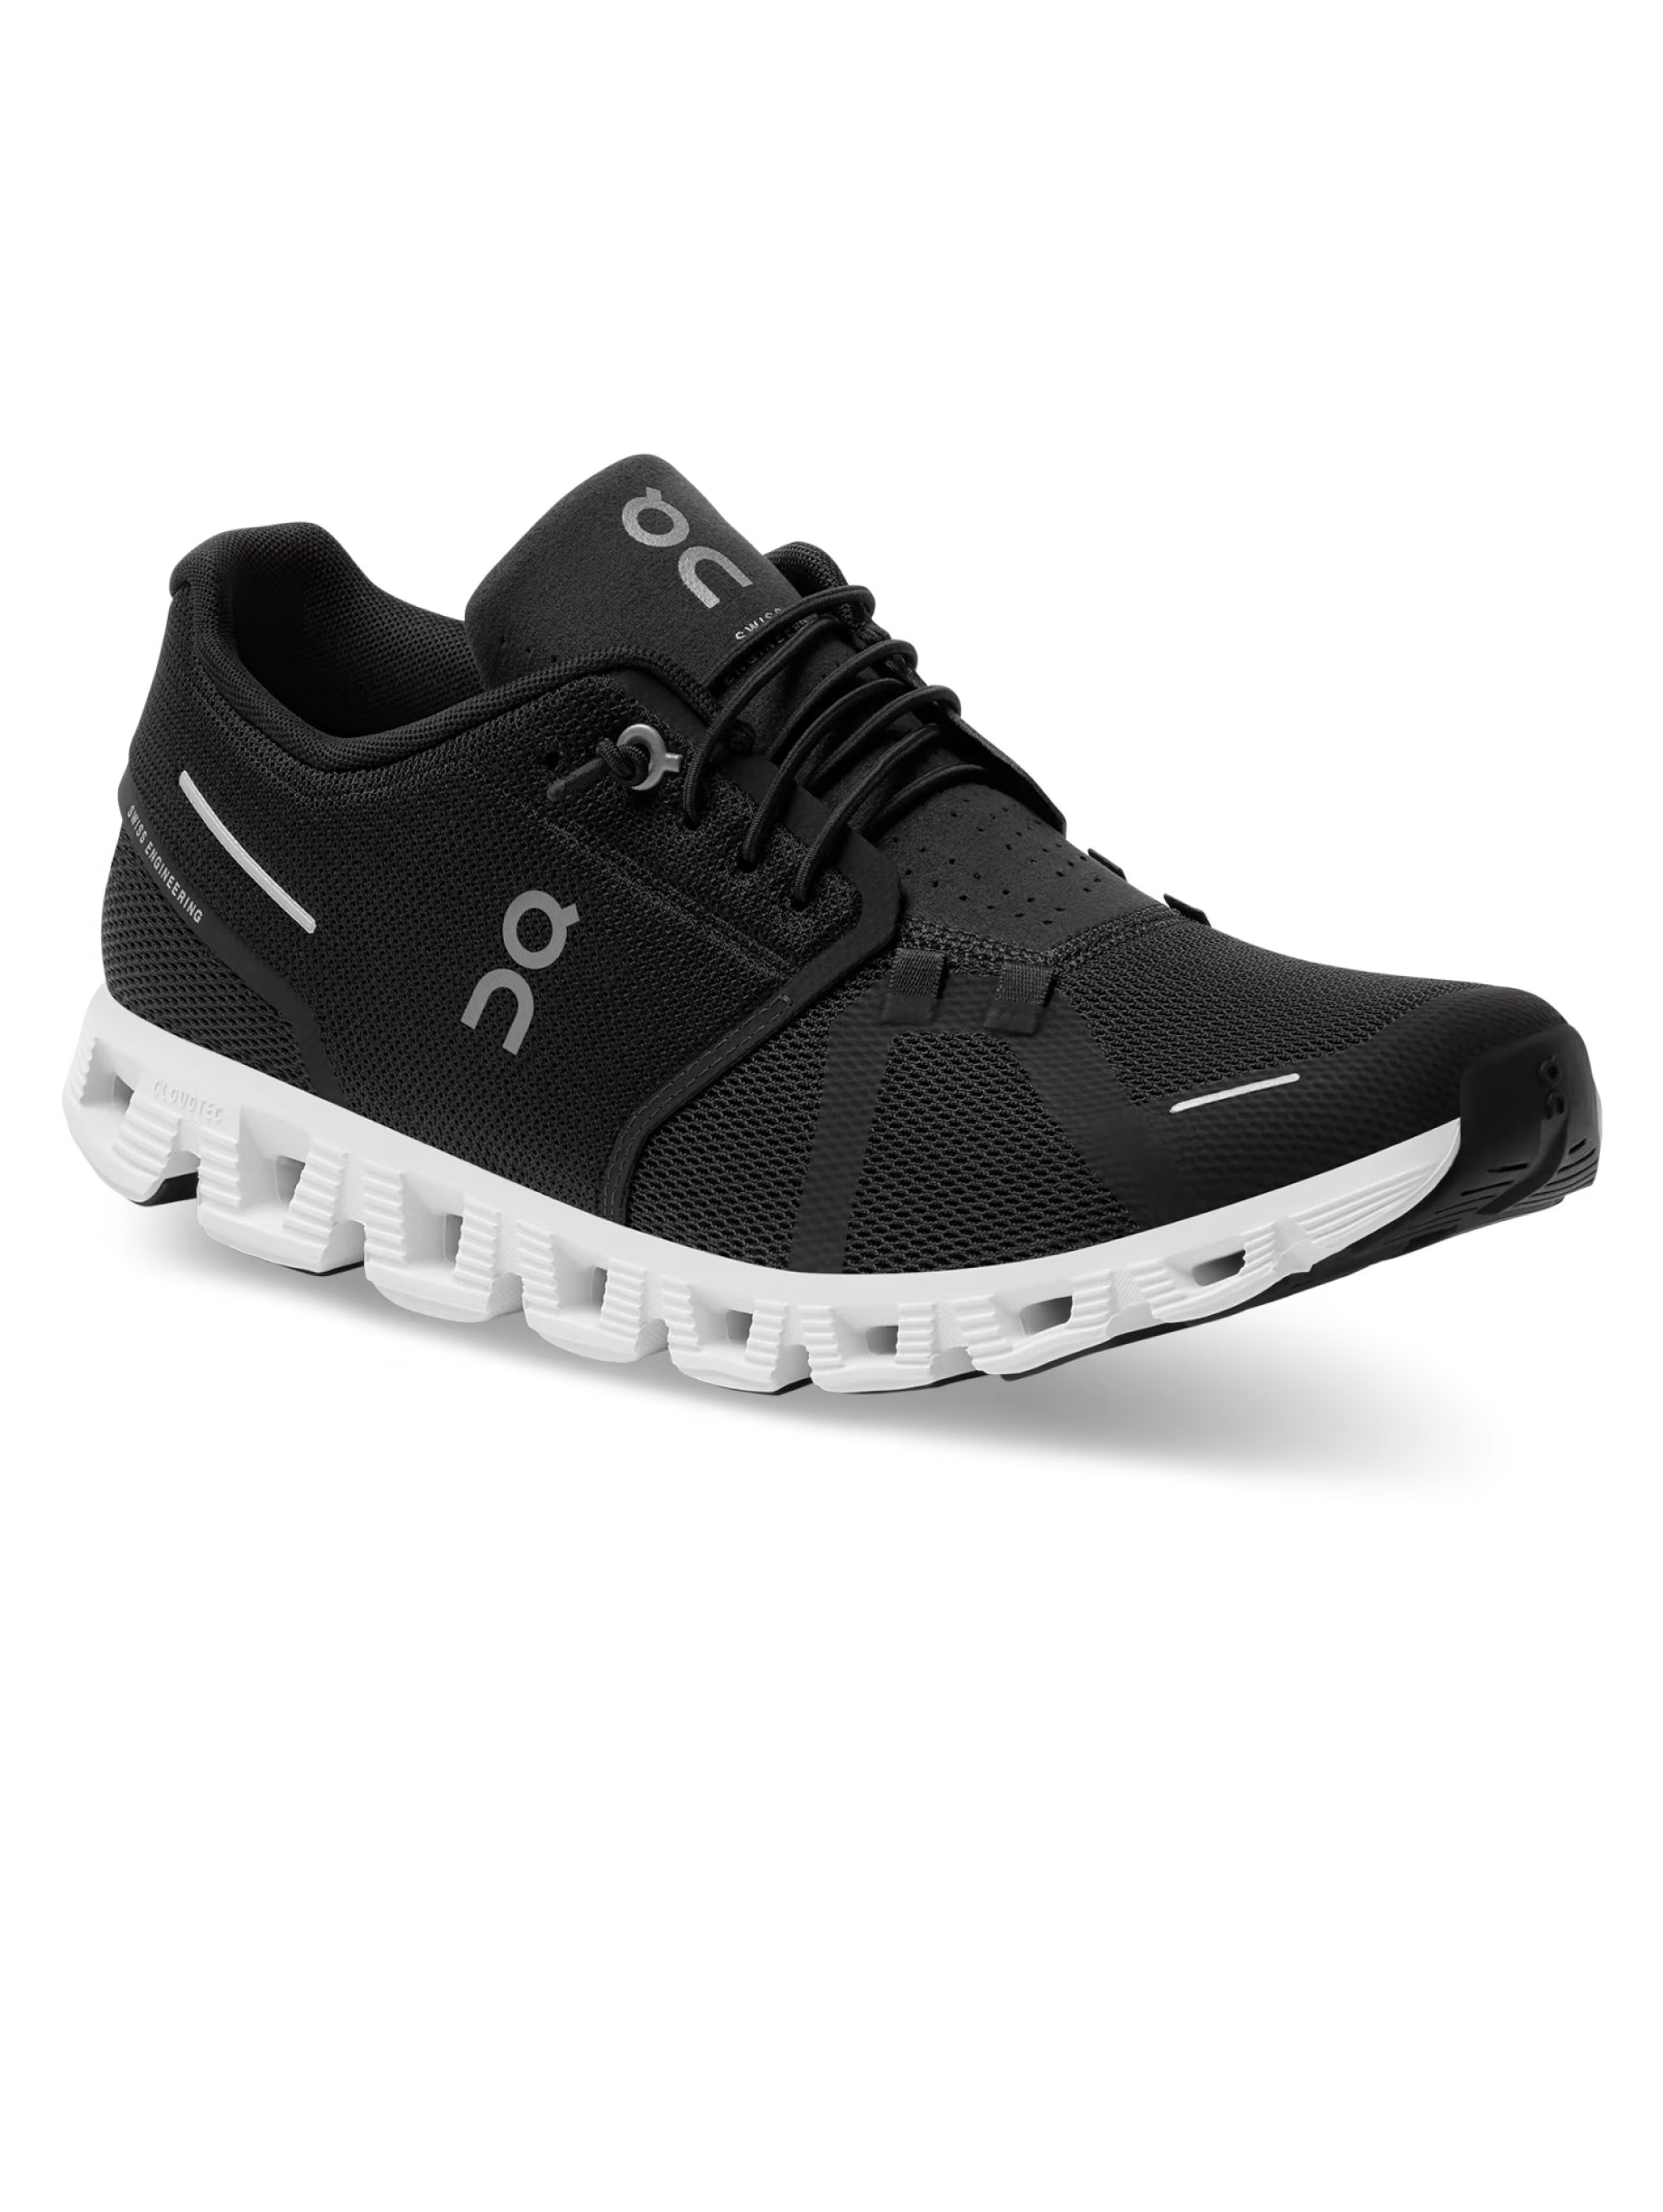 Cloud 5 Running Sneakers Black/White